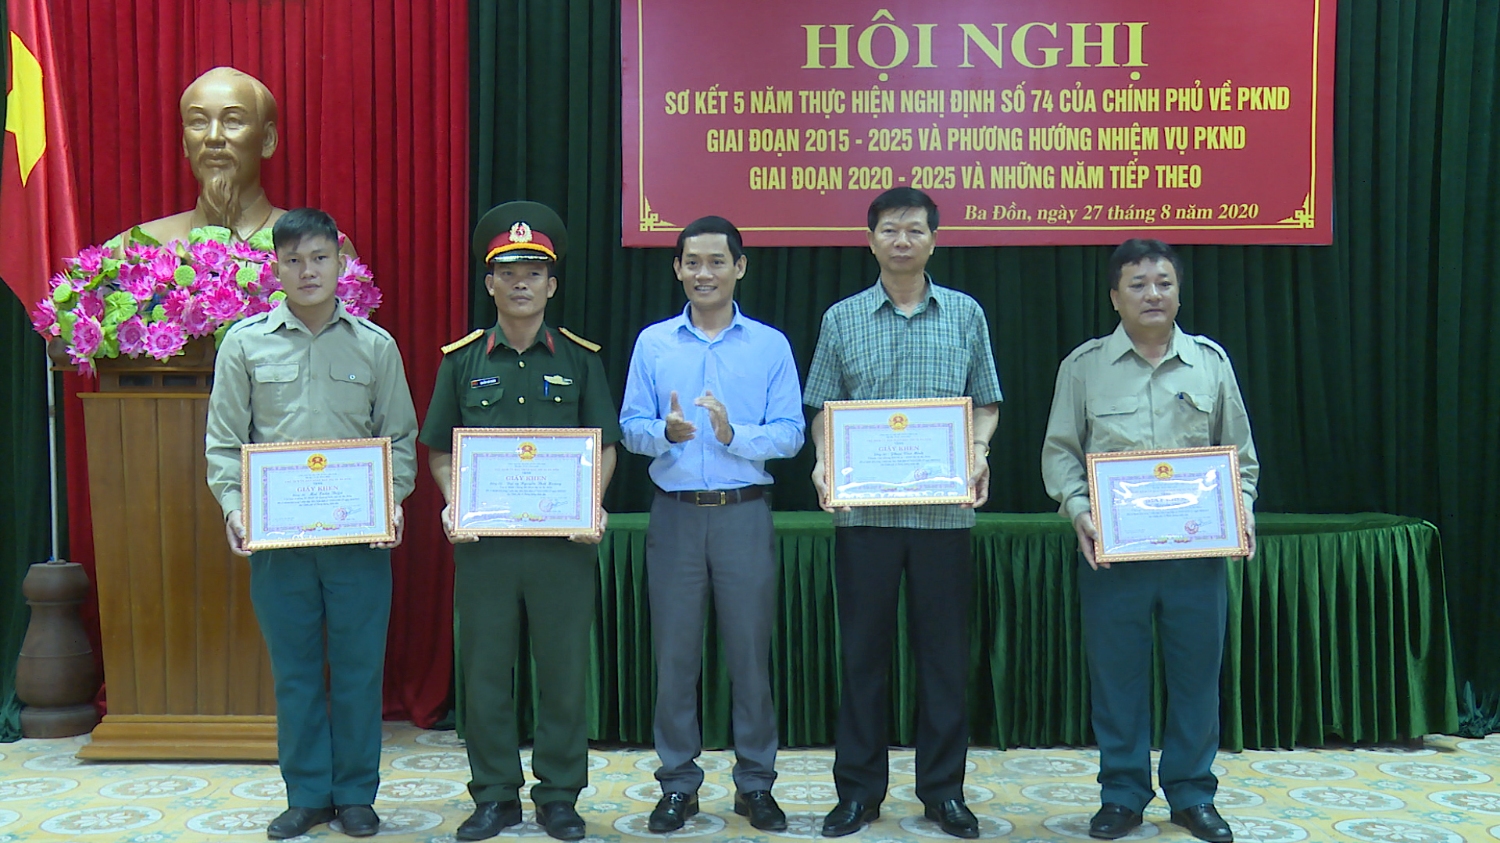 Đồng chí Nguyễn Văn Tình tặng giấy khen cho 6 tập thể có thành tích xuất sắc trong công tác PKND giai đoạn 2015 2020